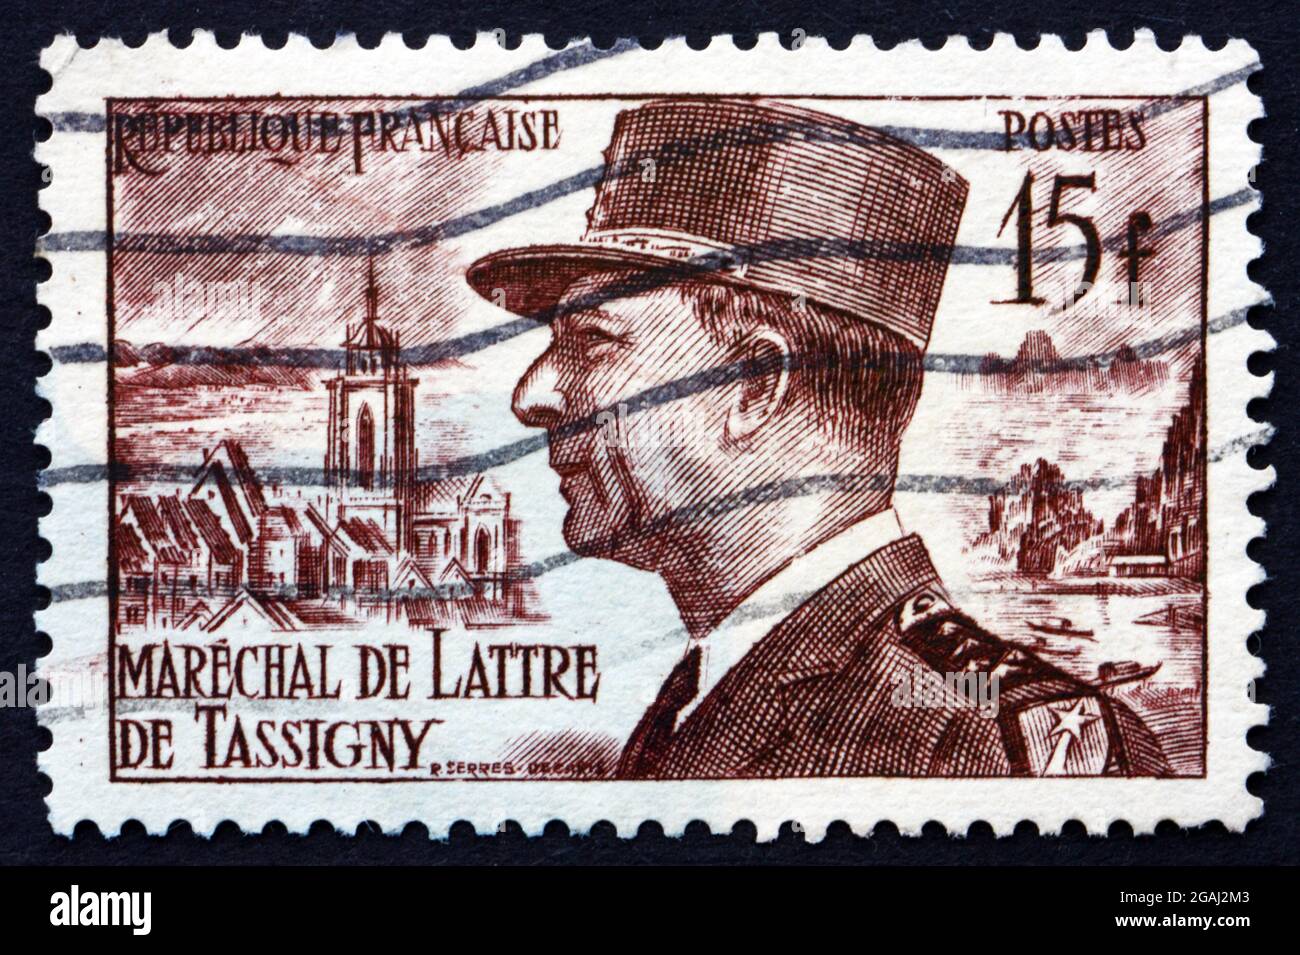 FRANCE - VERS 1952 : un timbre imprimé en France montre le Maréchal Jean de Lattre de Tassigny, héros militaire français de la Seconde Guerre mondiale, vers 1952 Banque D'Images